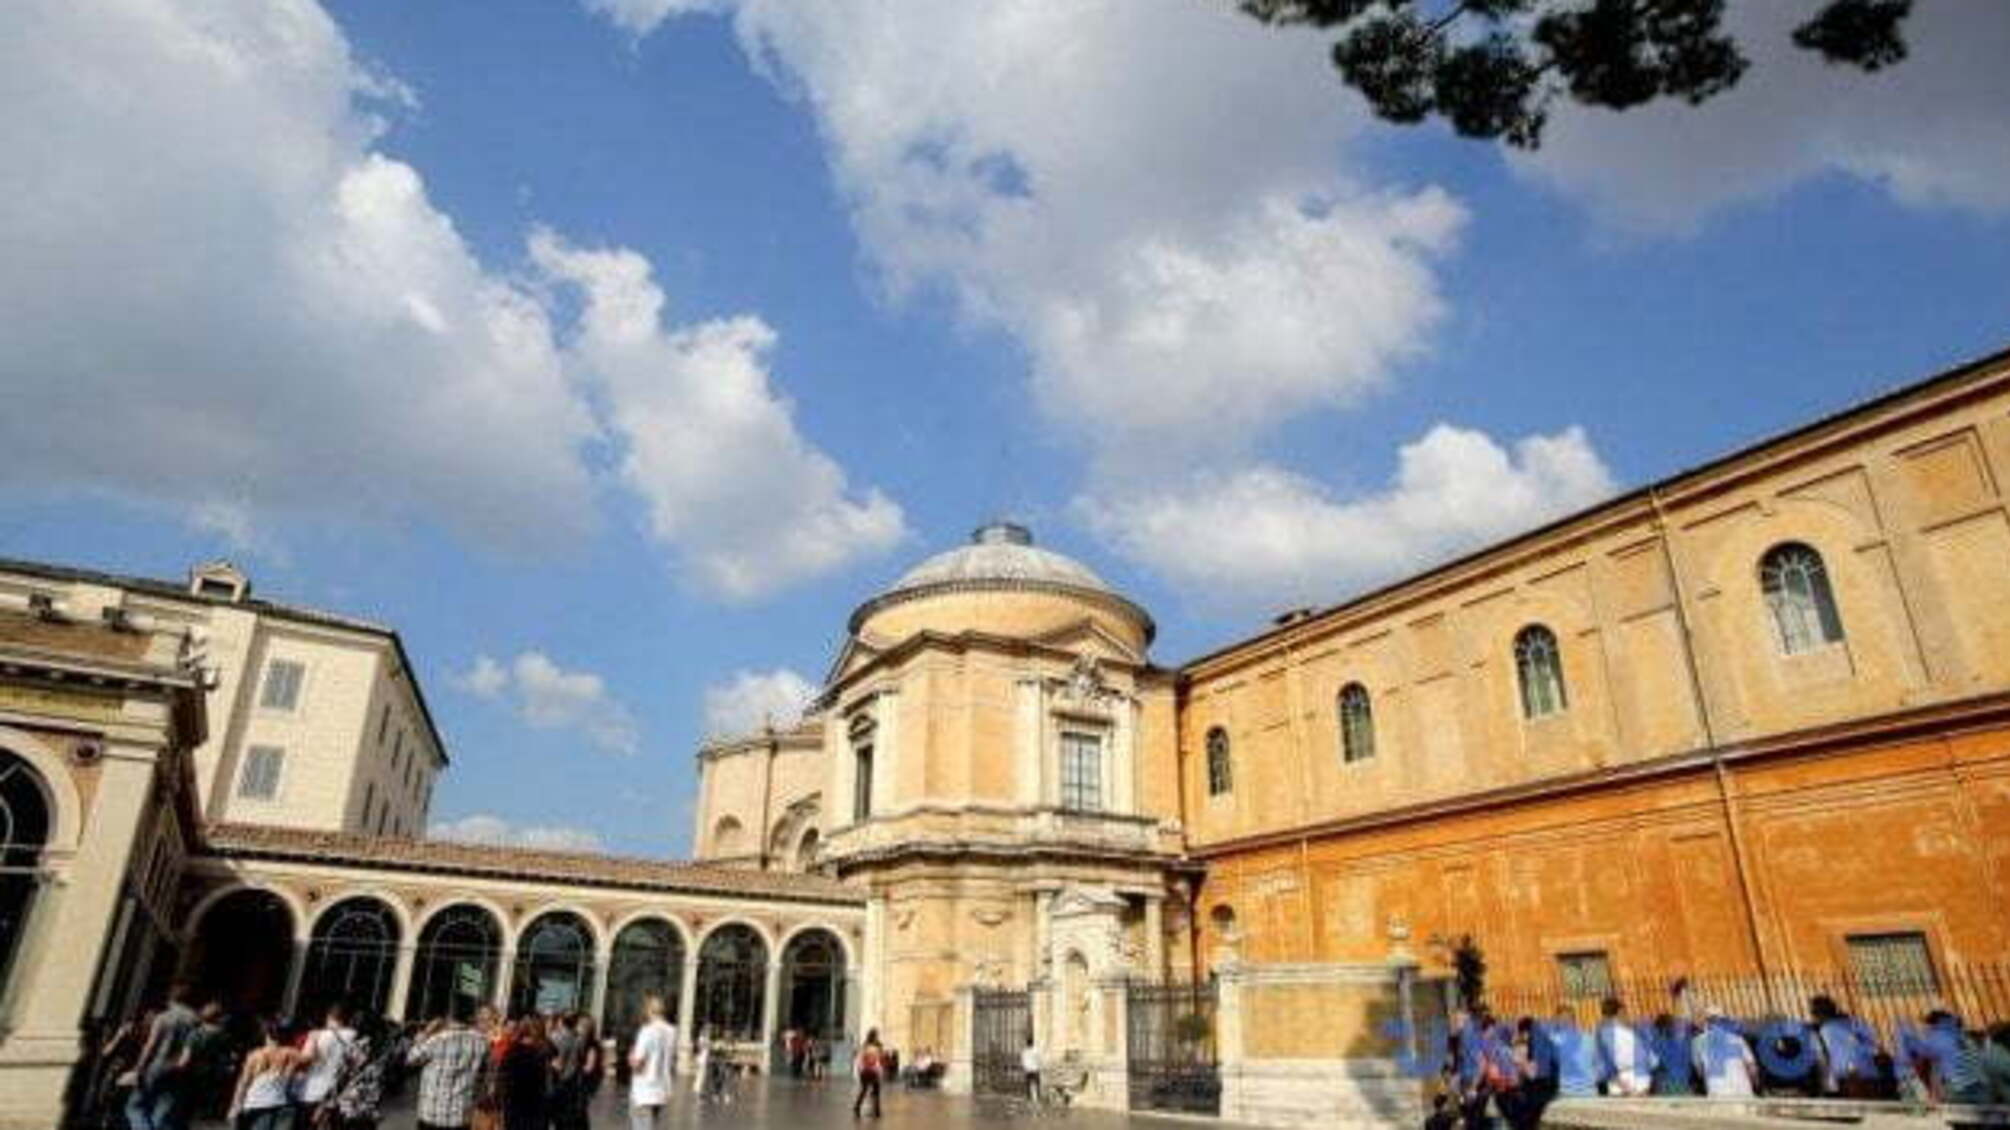 Музеї Ватикану розкритикували за відкриття в умовах карантину